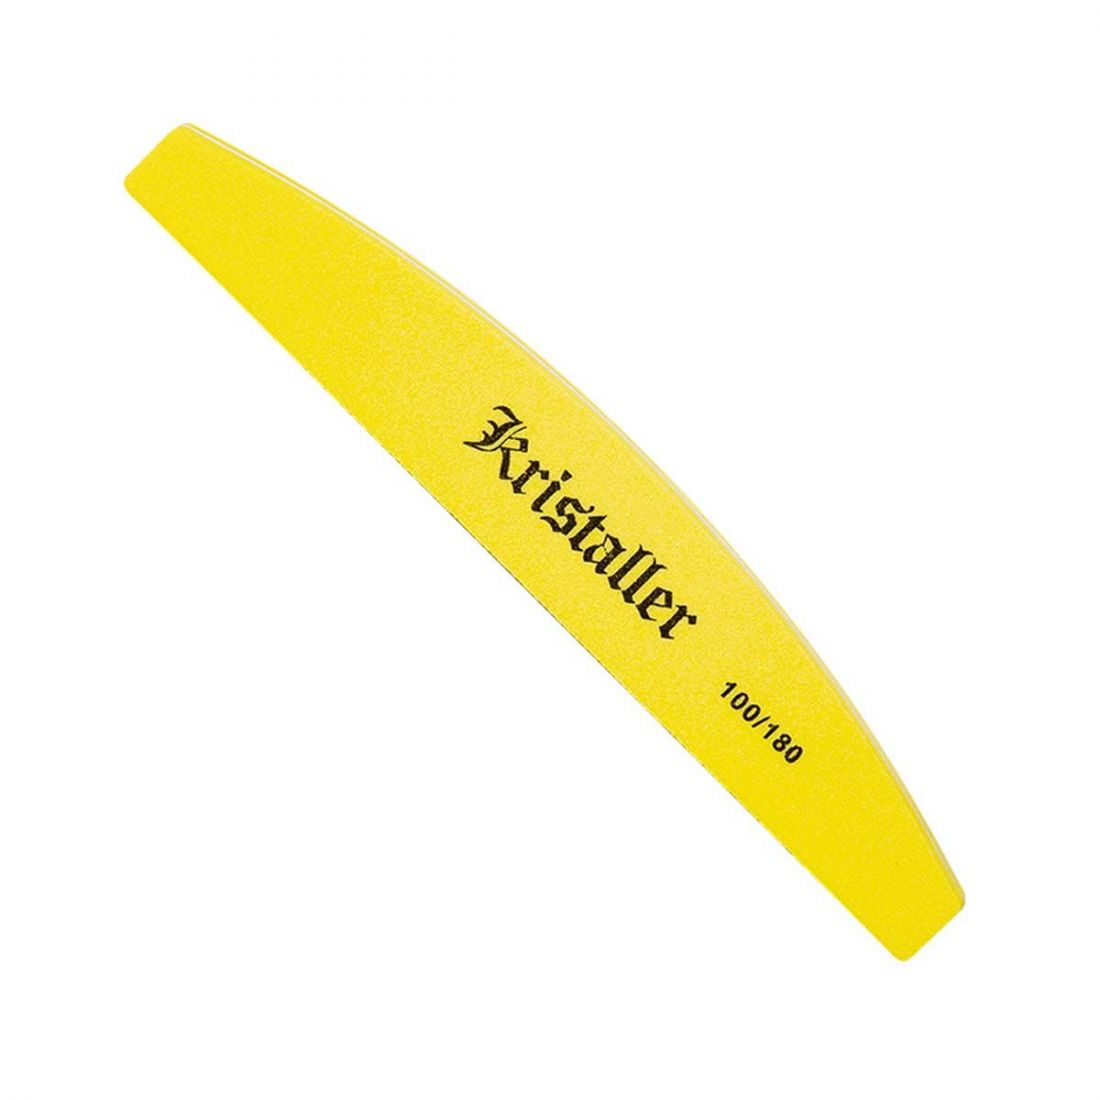 Kristaller шлифовщик для ногтей лодка 100/180 грит, желтый, арт.1201